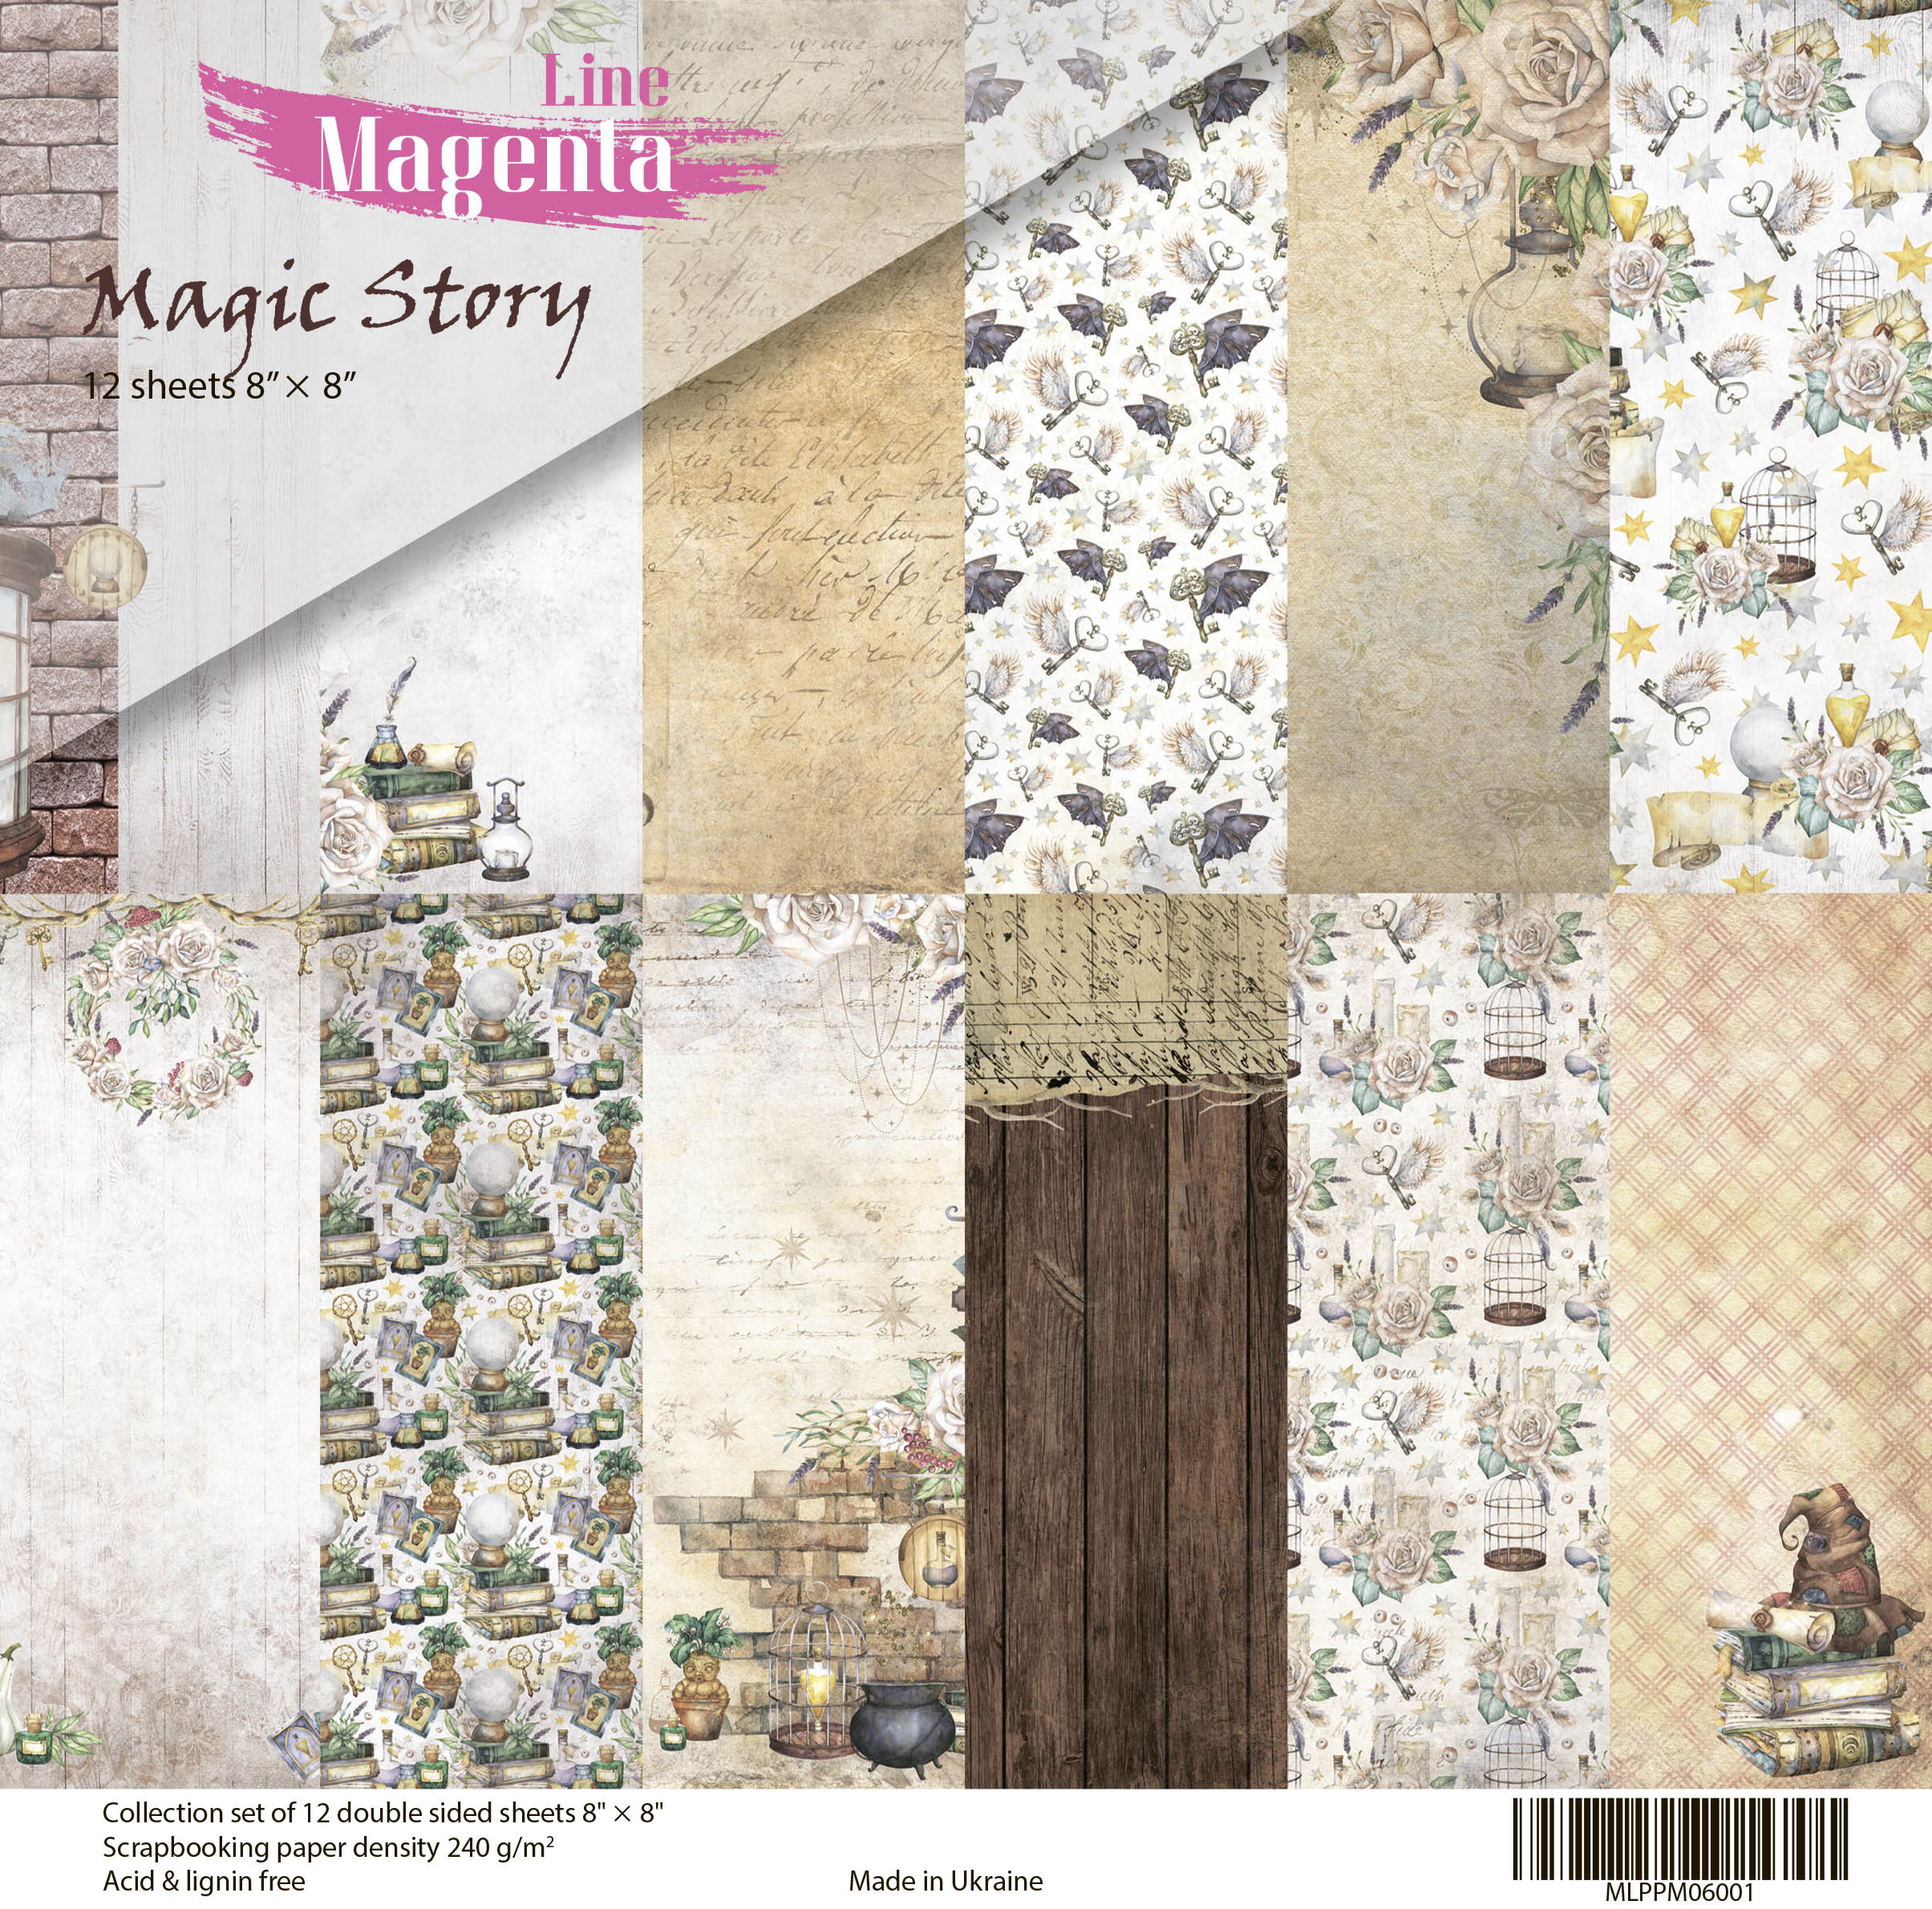 Набор скрапбумаги, Magic Story, 12 двусторонних листов, 20х20 см, Magenta Line